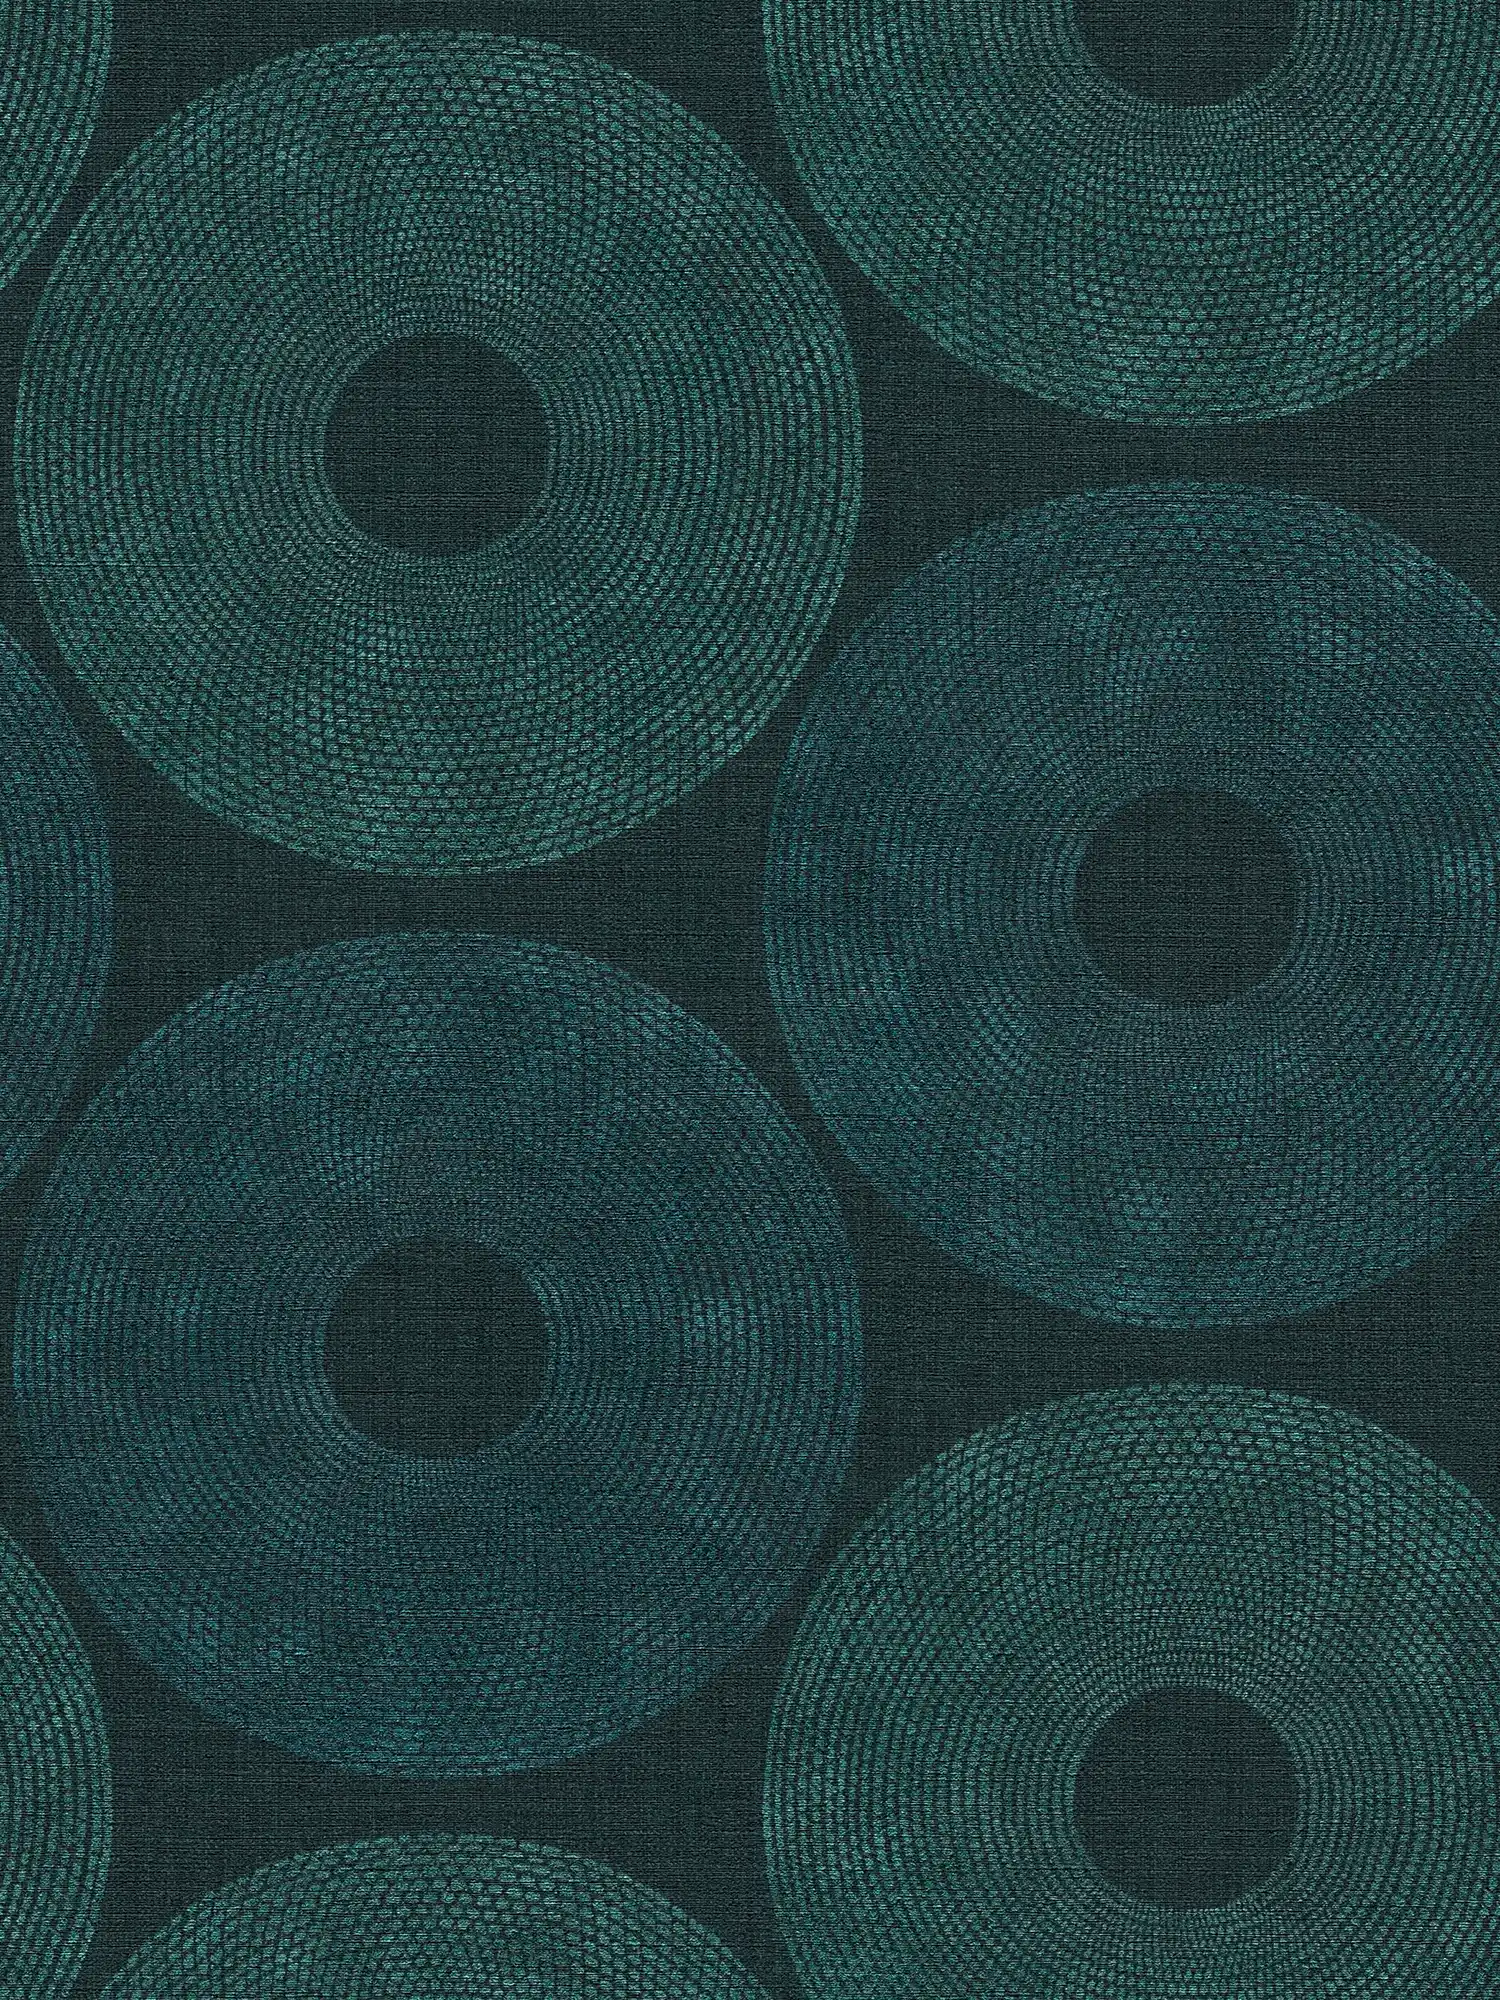 Papier peint ethnique Cercles avec motif structuré - vert, métallique
